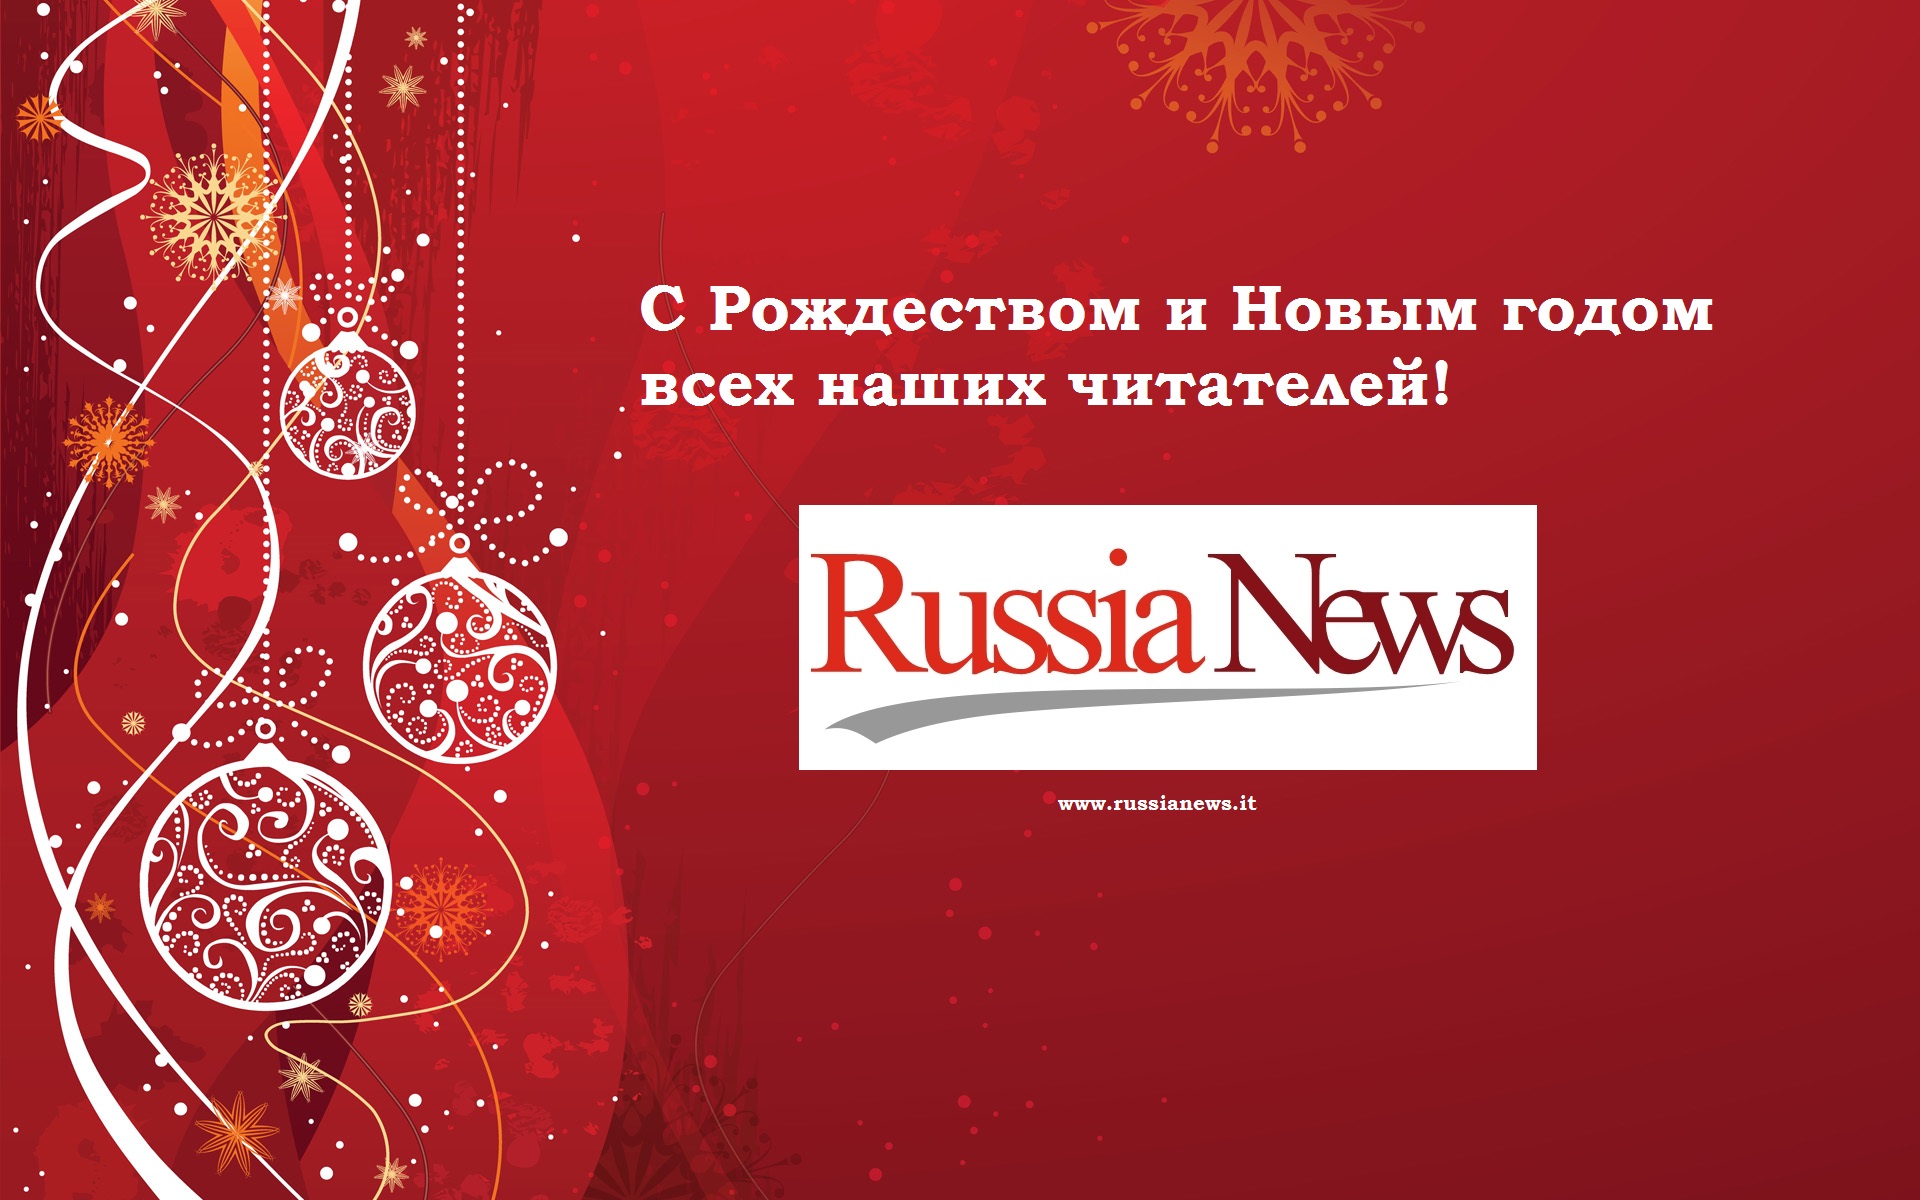 Buon Natale E Felice Anno Nuovo In Russo.Buon Natale E Felice Anno Nuovo A Tutti I Lettori Di Russia News Russia News Novosti Rossii